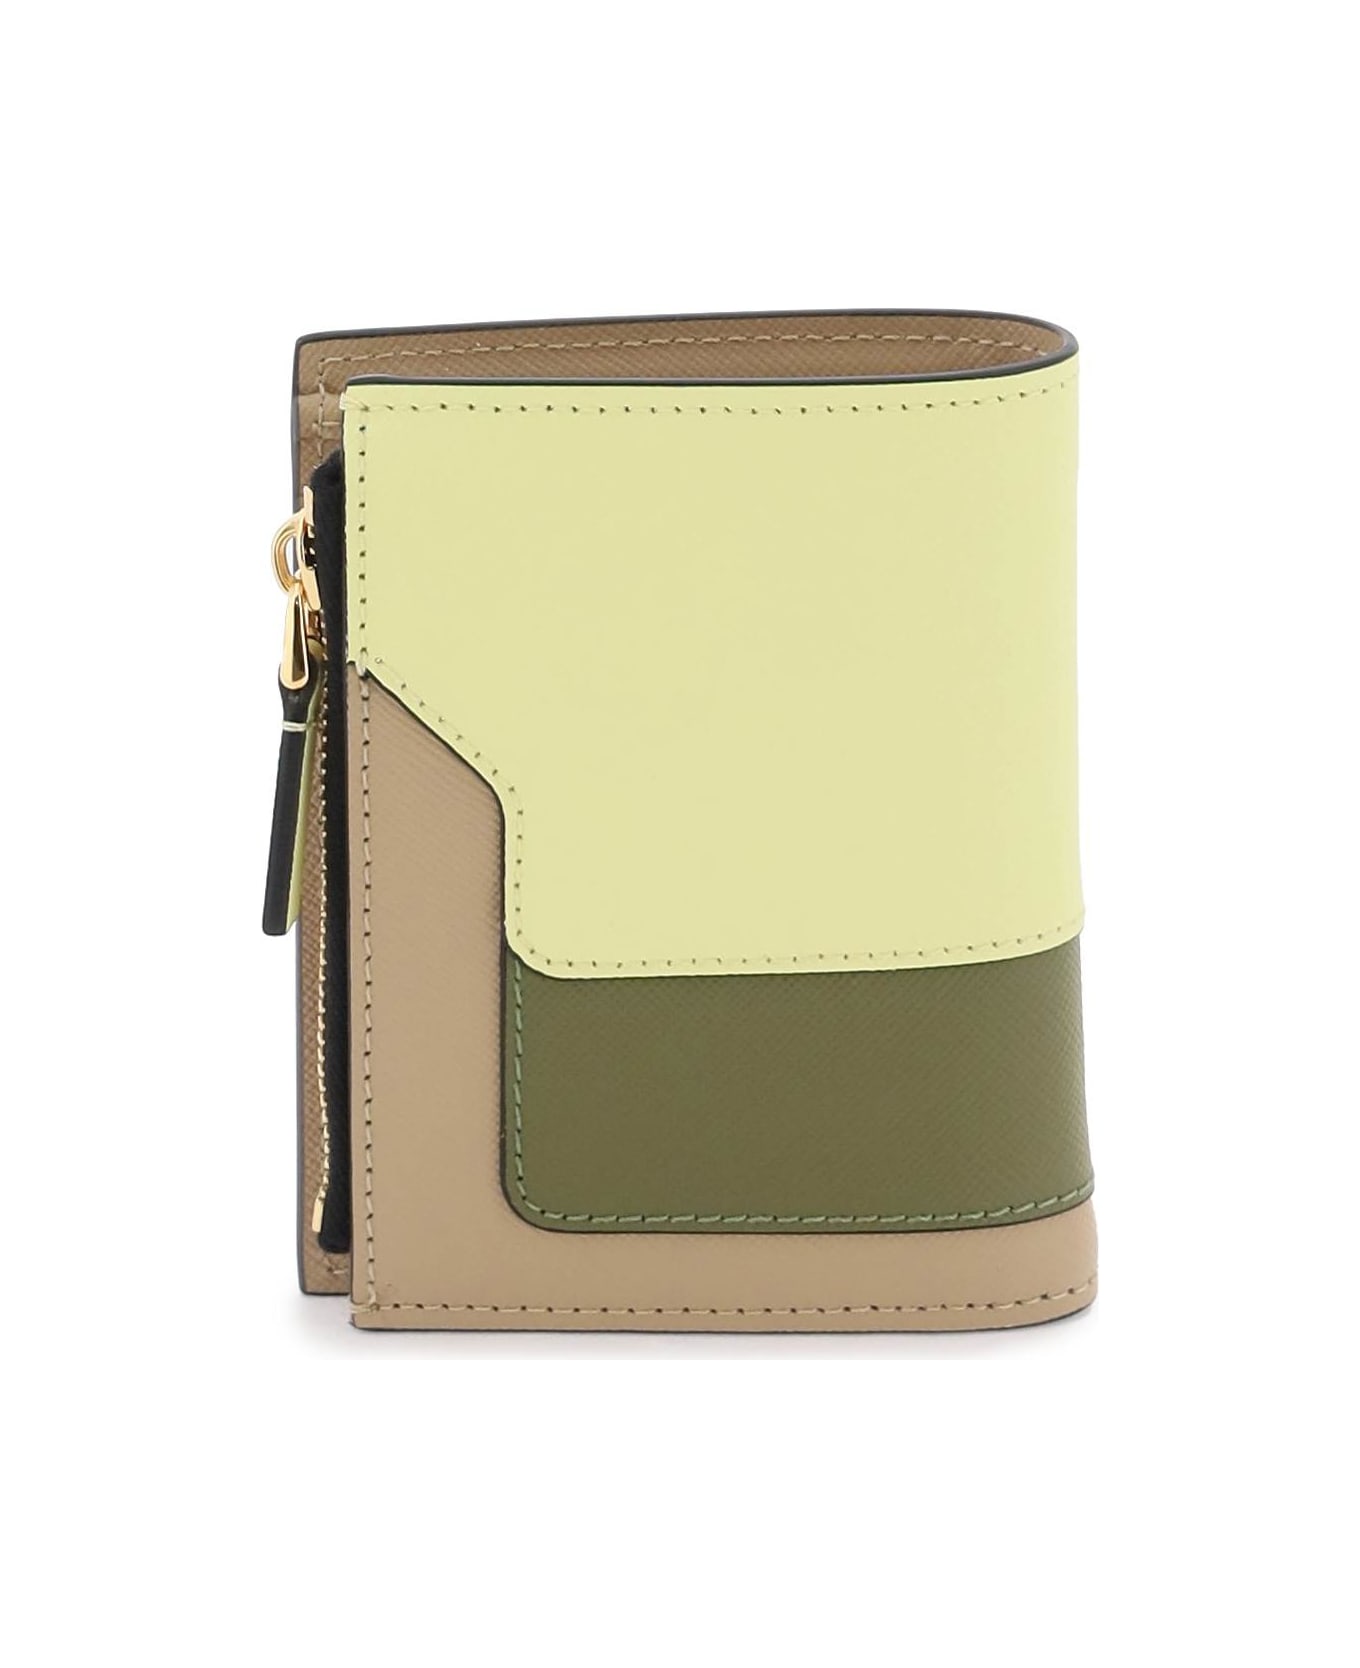 Marni Multicolored Saffiano Leather Bi-fold Wallet - VANILLA OLIVE SOFT BEIGE (Beige) 財布